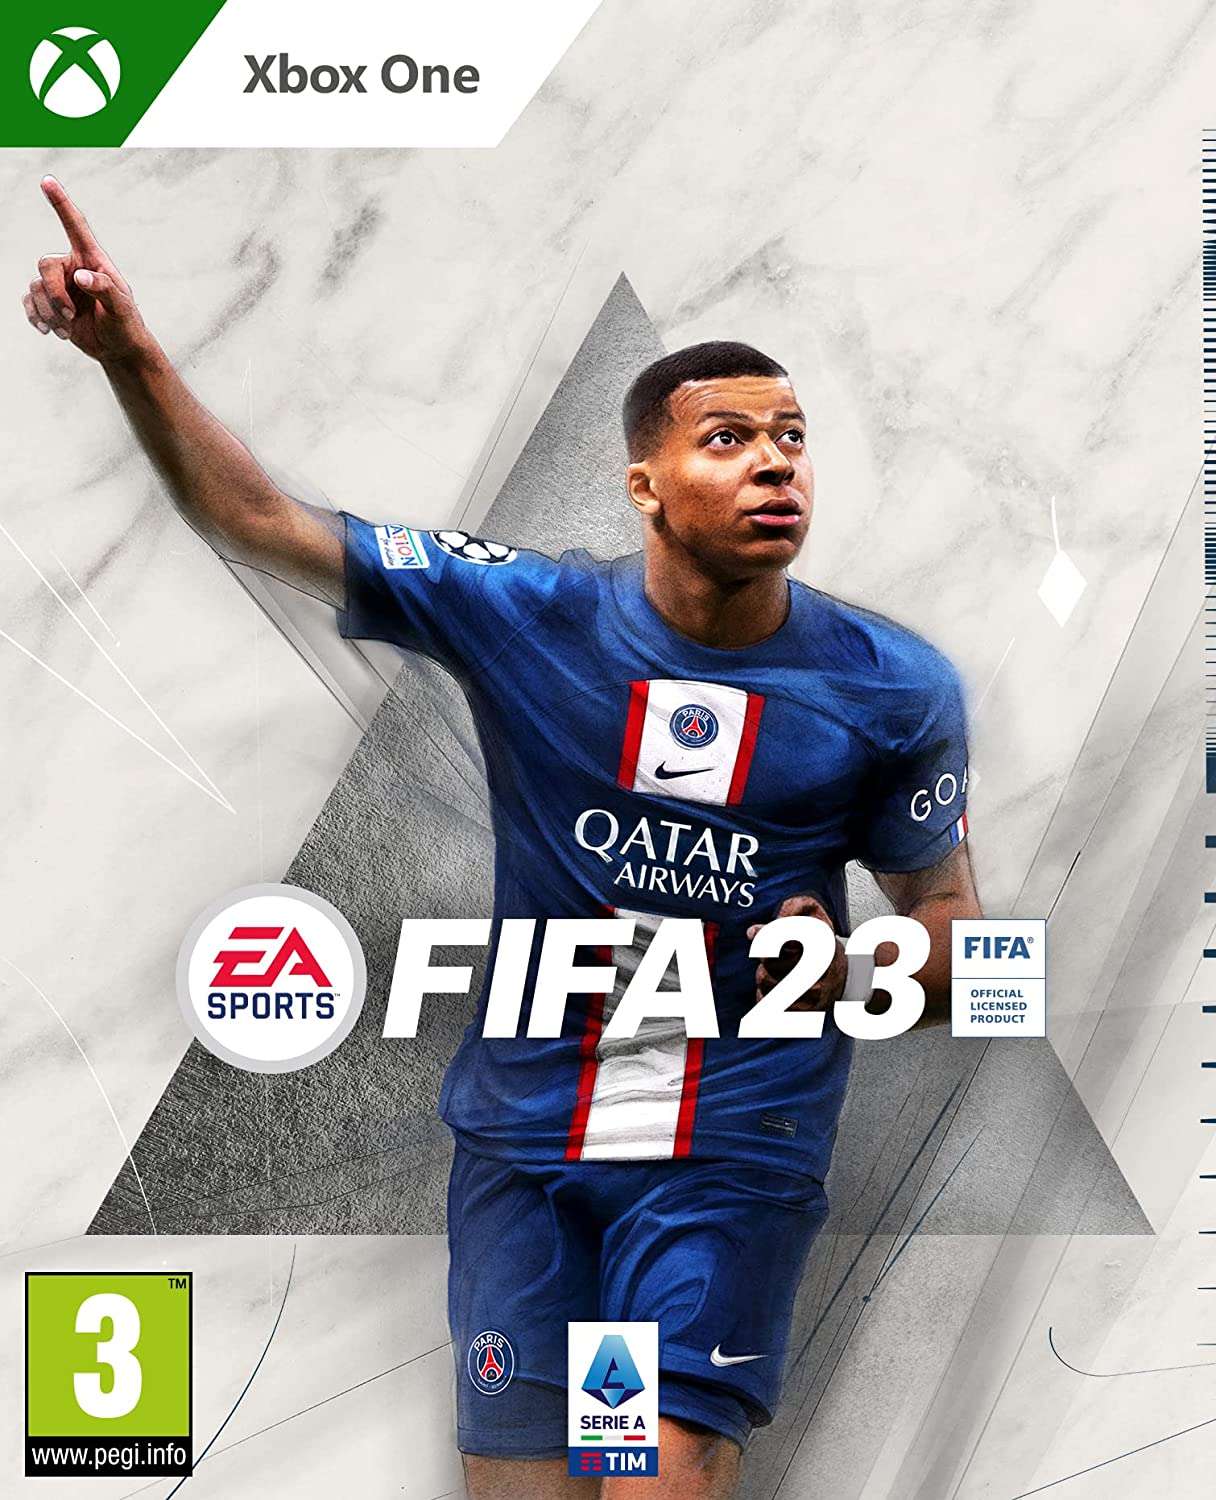 FIFA 23 migliori giochi xbox series s